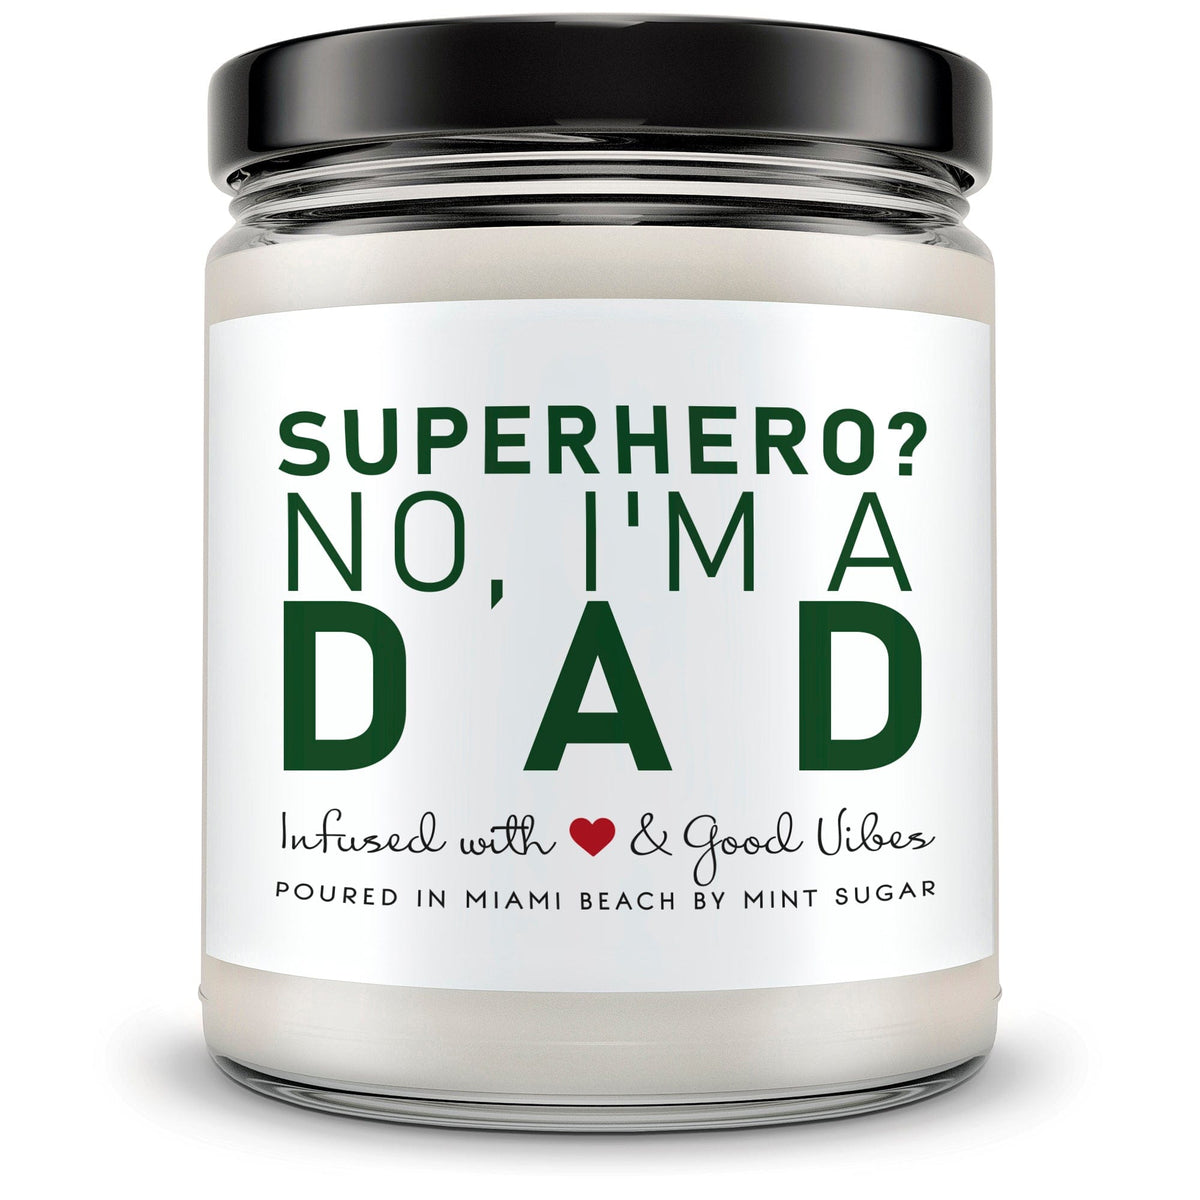 Superhero No, I'm a Dad - Mint Sugar Candle